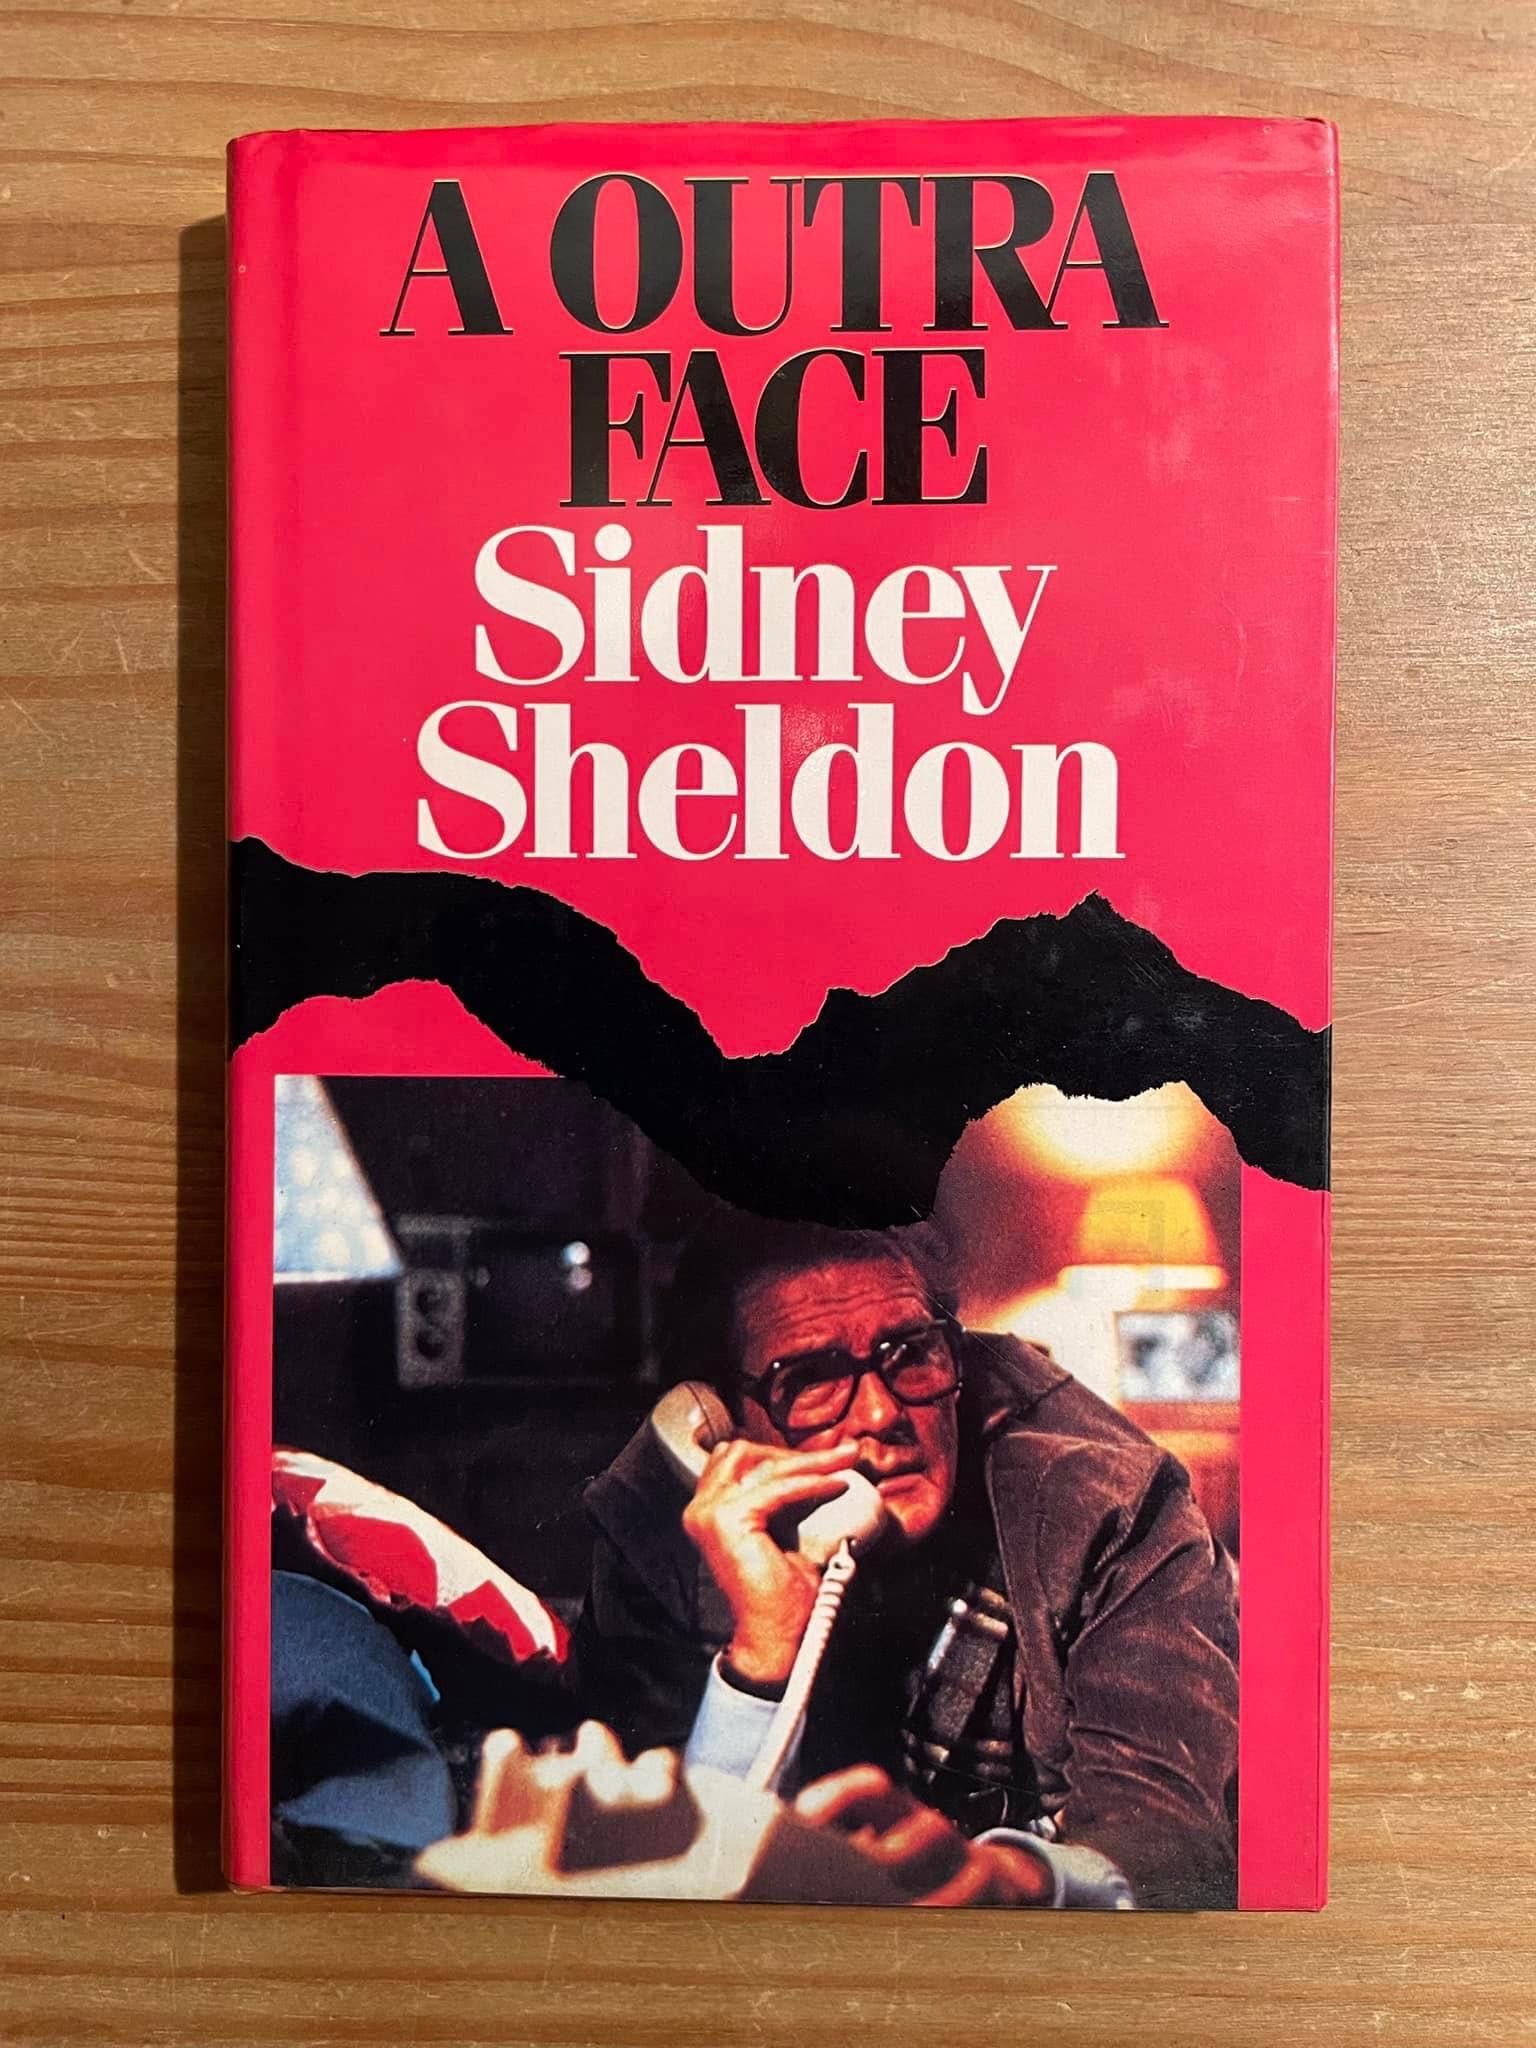 A Outra Face - Sidney Sheldon (portes grátis)